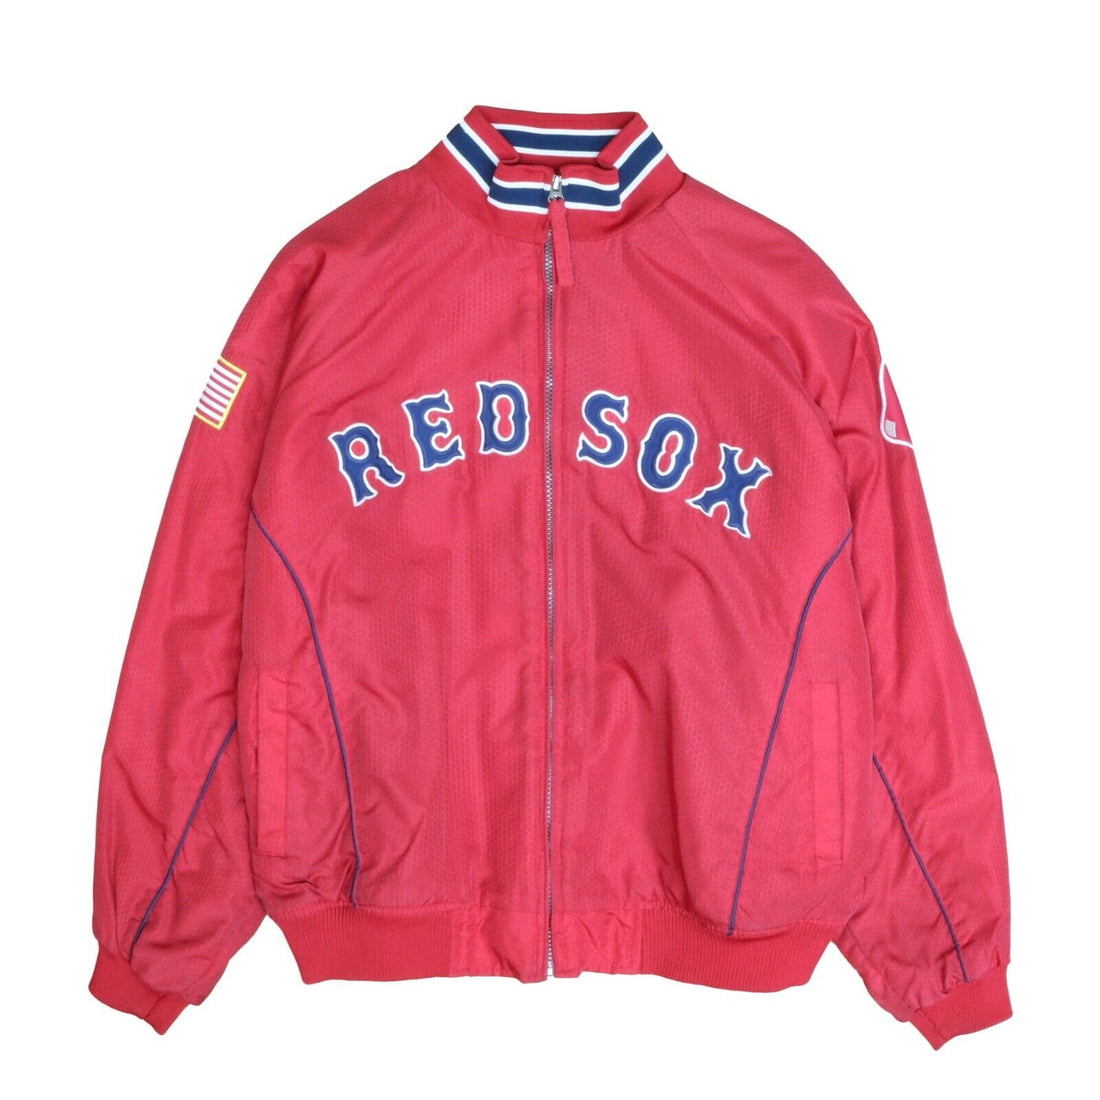 New Vintage Majestic MLB Boston Red Sox Bomber Varsity Jacket Size Large